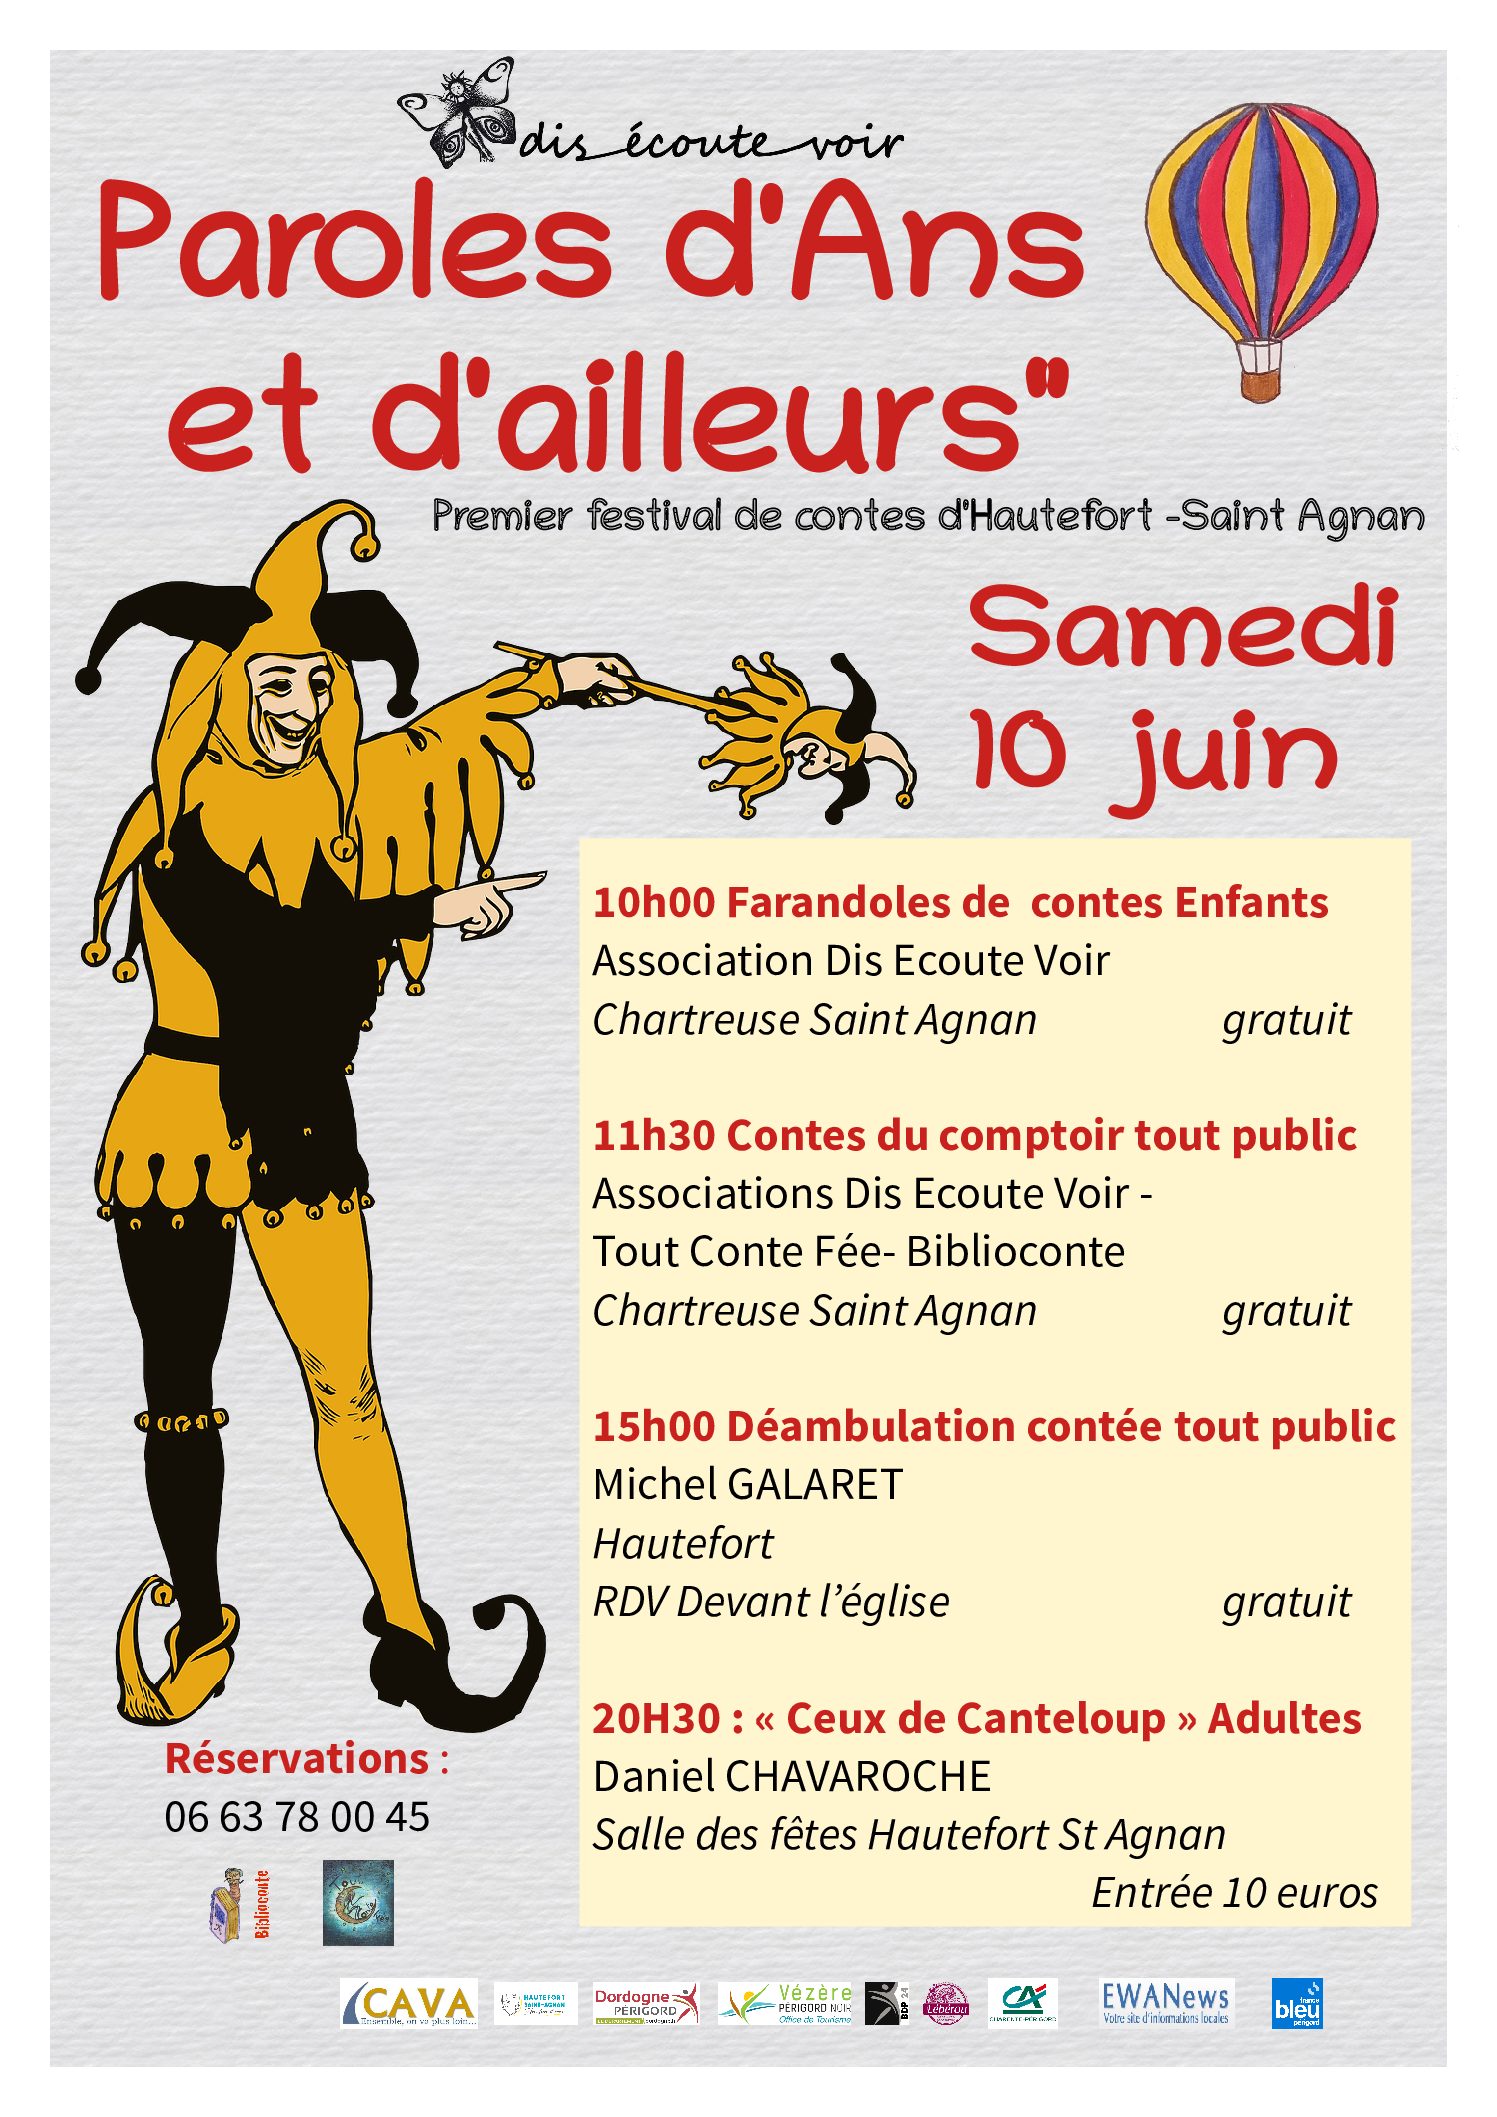 samedi 10 juin : « Paroles d’Ans et d’ailleurs » – 1er festival de conte Hautefort – St-Agnan